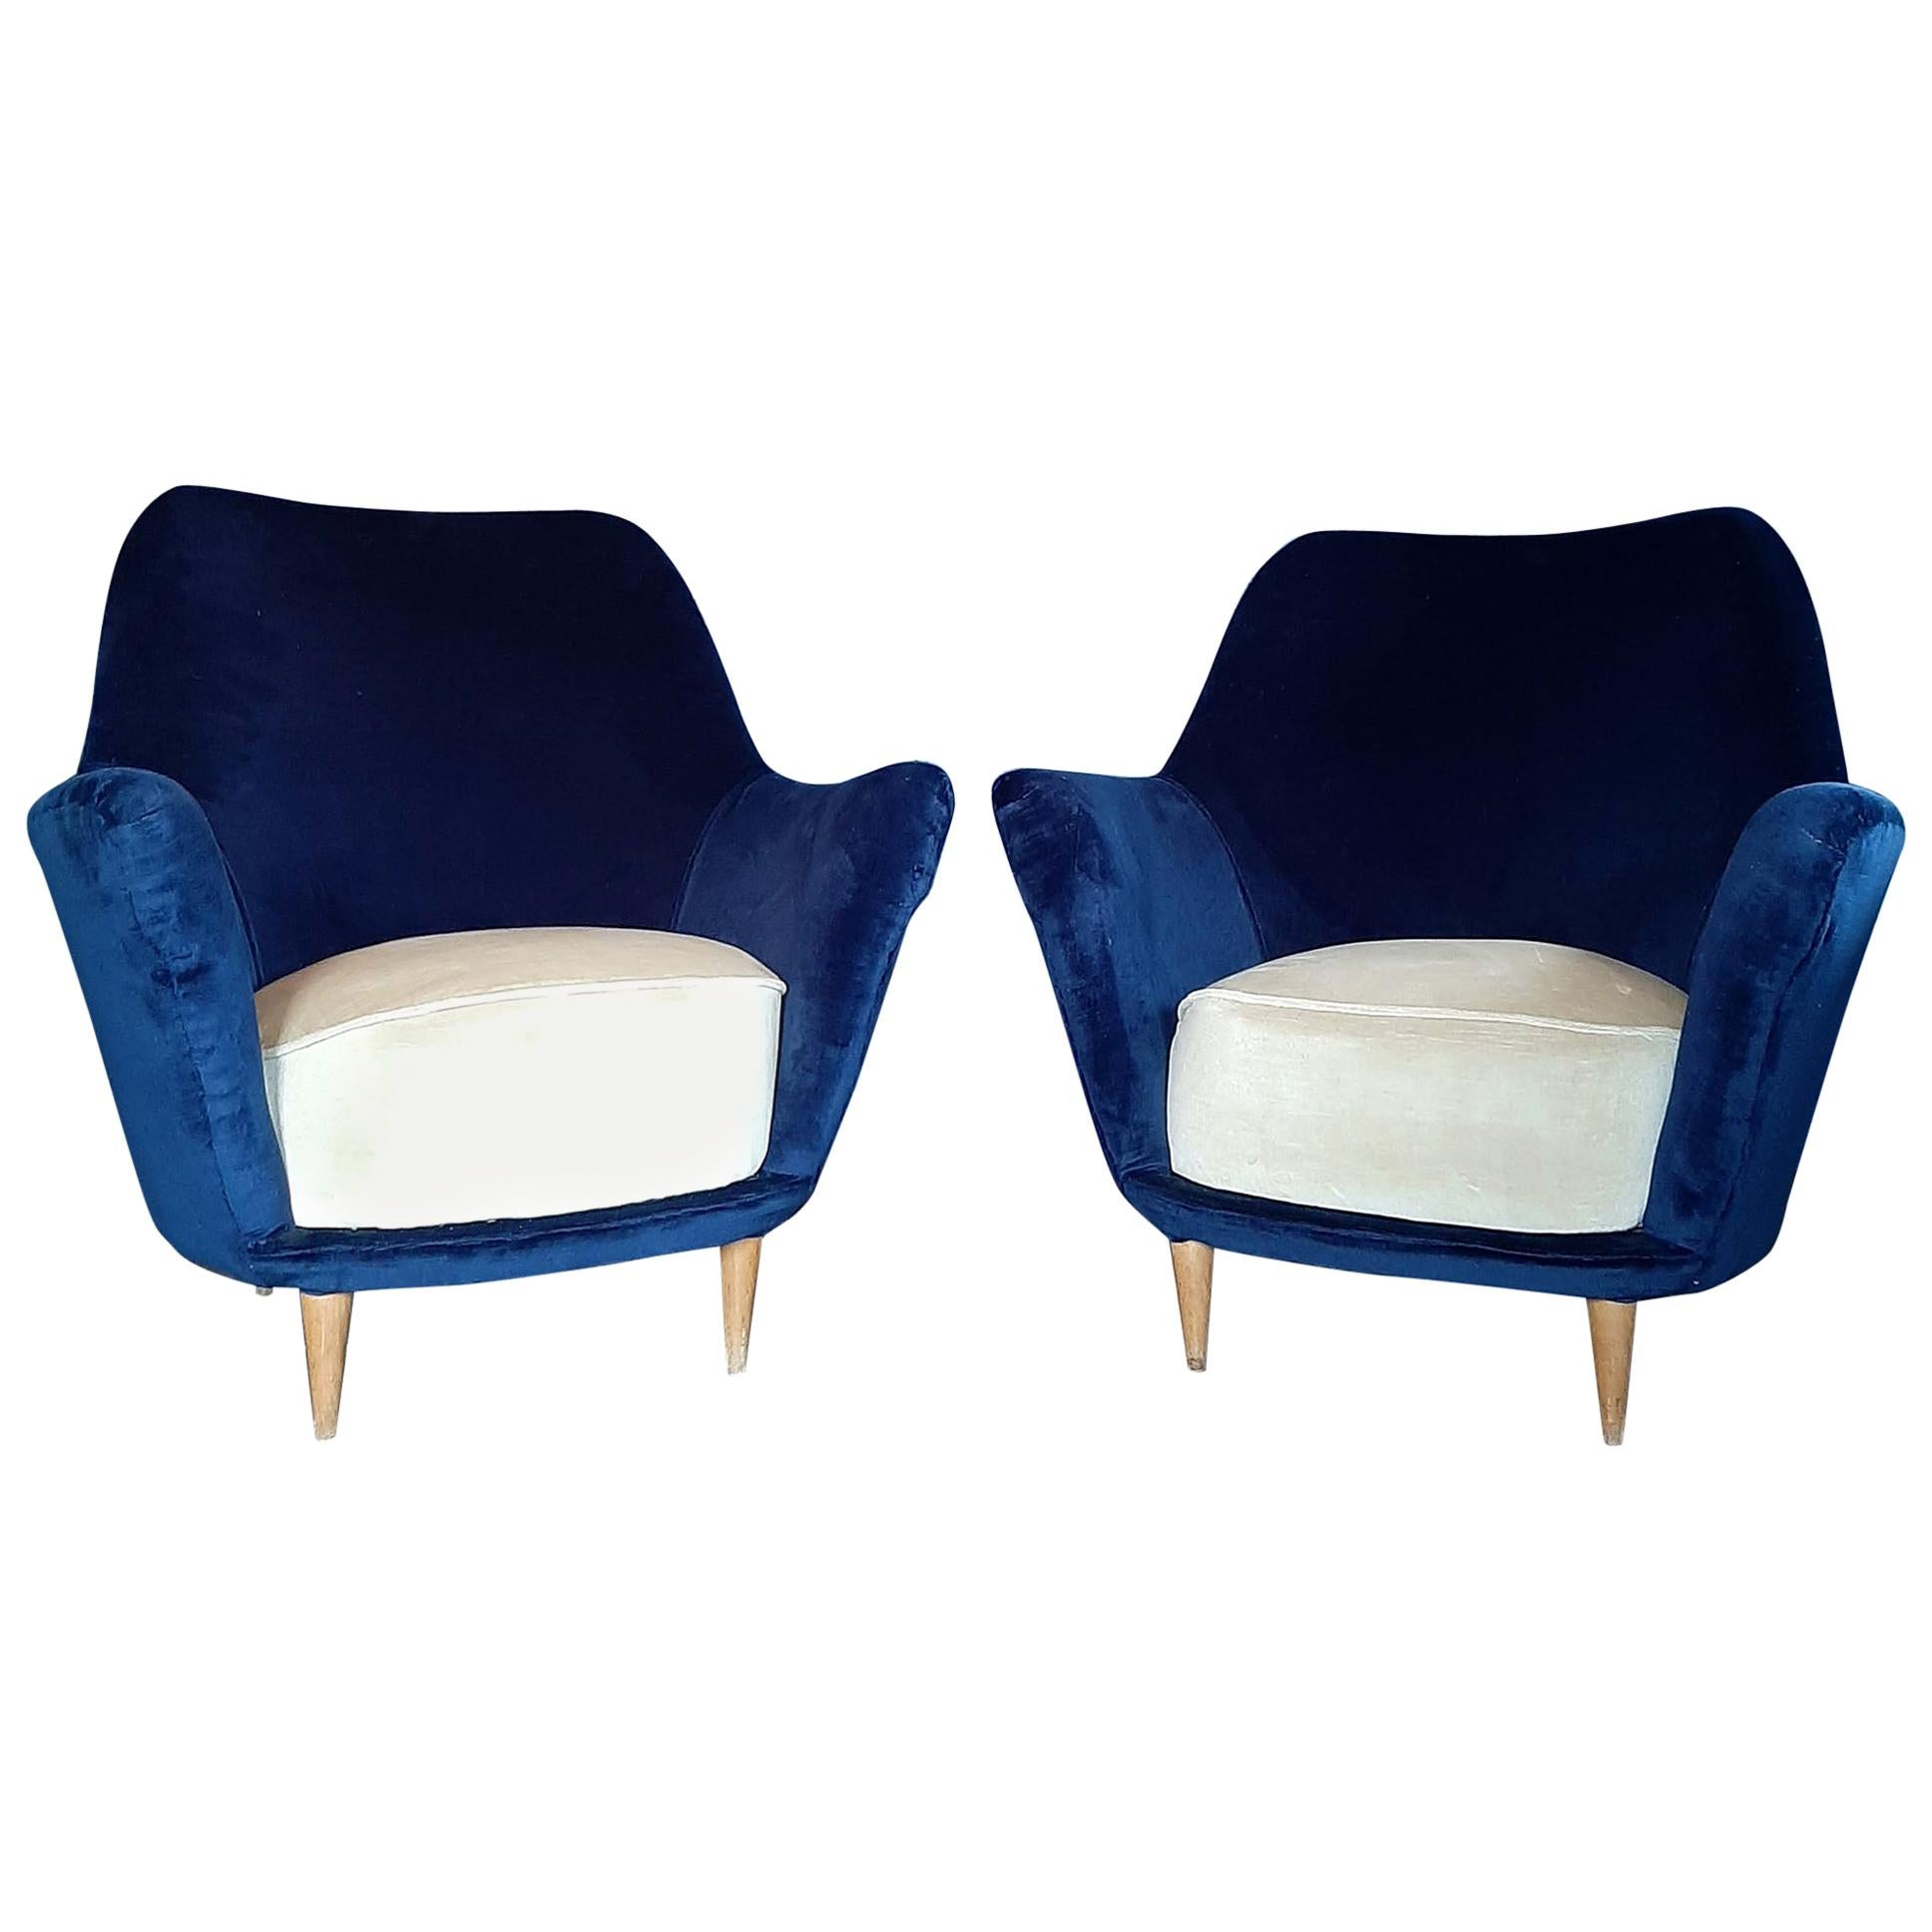 Paire de vieux fauteuils italiens en bleu cobalt et crème